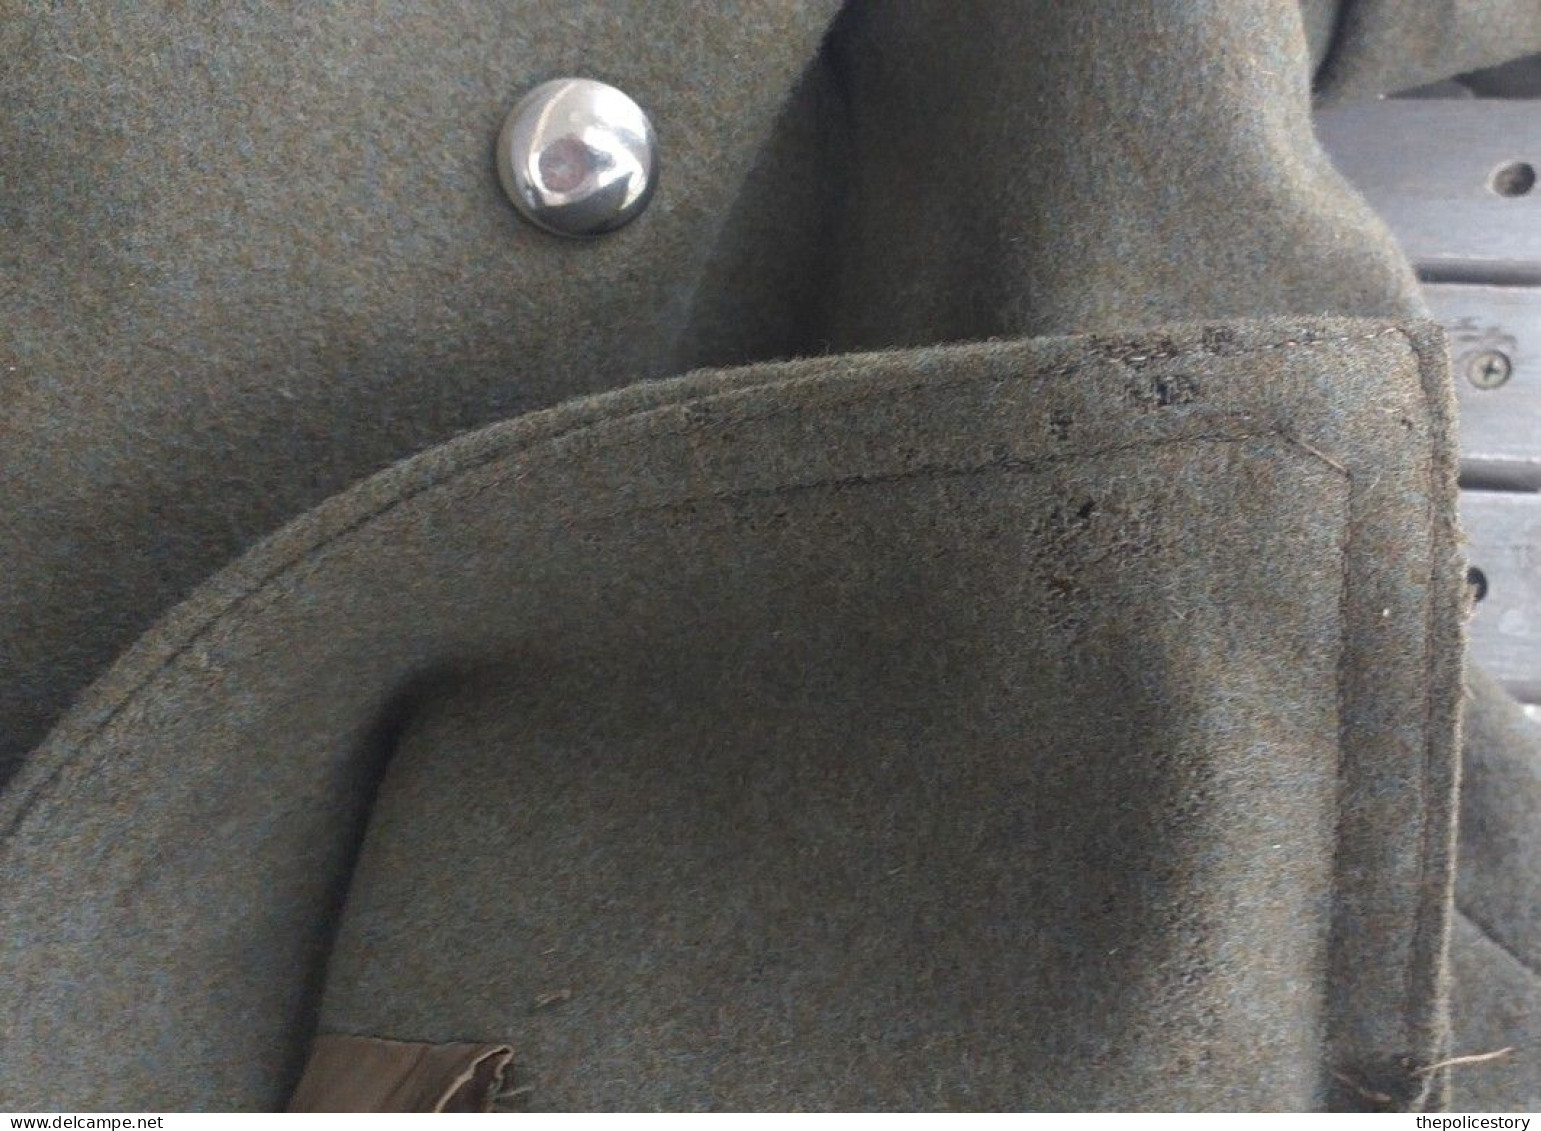 Cappotto vintage CC panno kaki del 1971 originale marcato completo